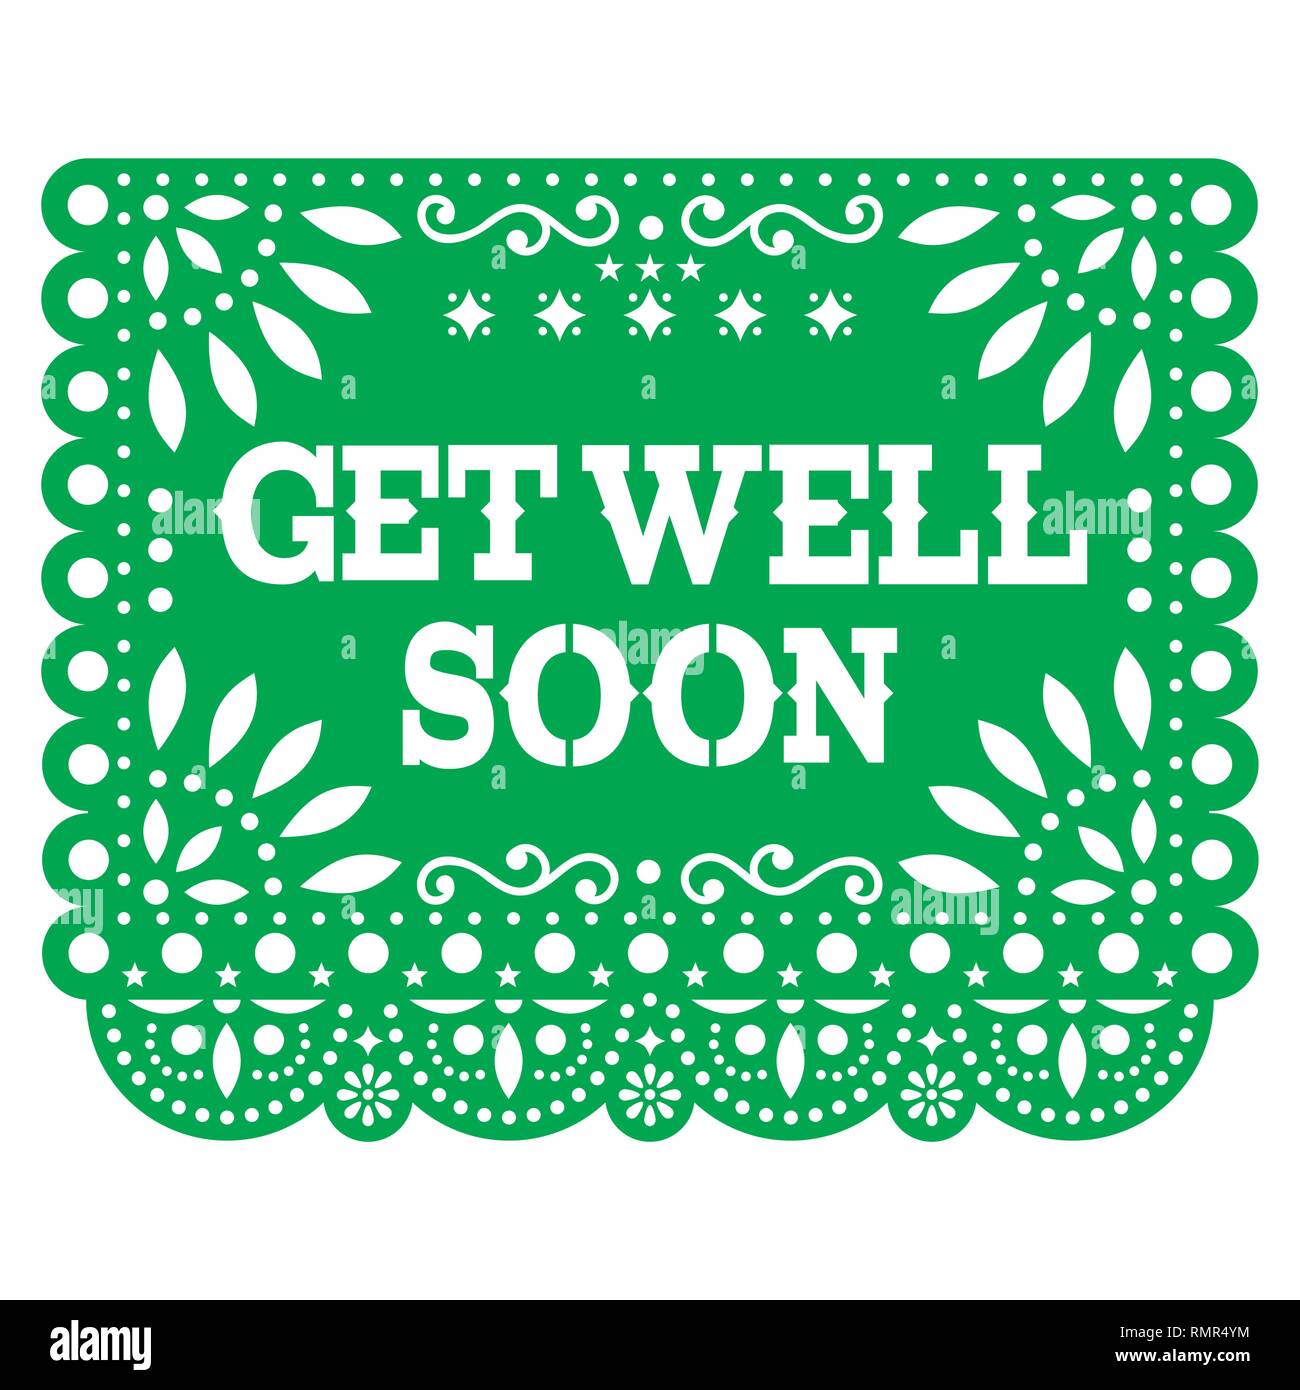 Get Well Soon papel picado carte de vœux ou carte postale - vert style mexicain vecteur conception comme décorations découpe du papier Illustration de Vecteur